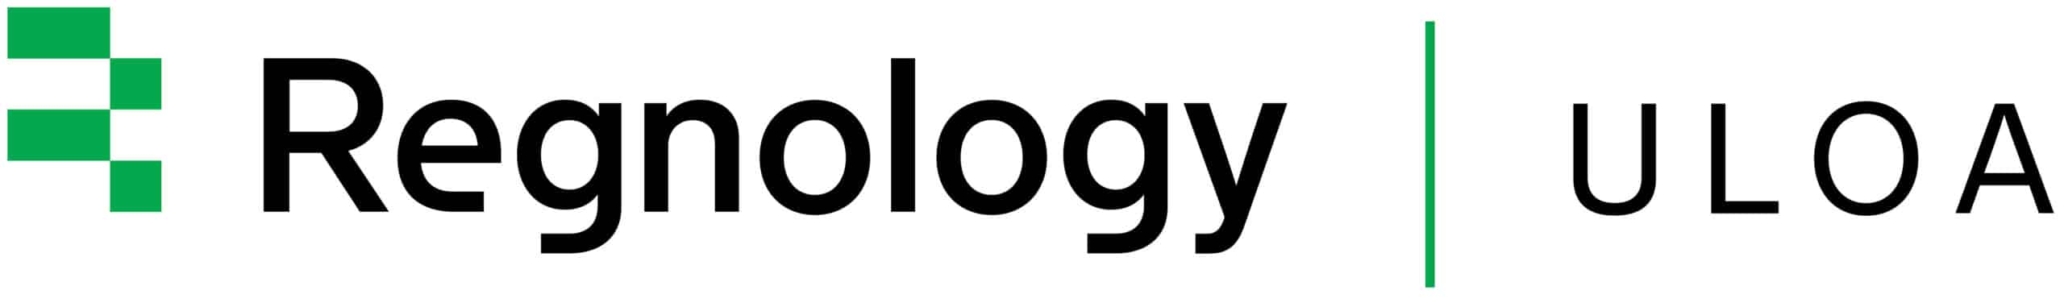 Regnology ULOA logo - Intégrateur Mercuria